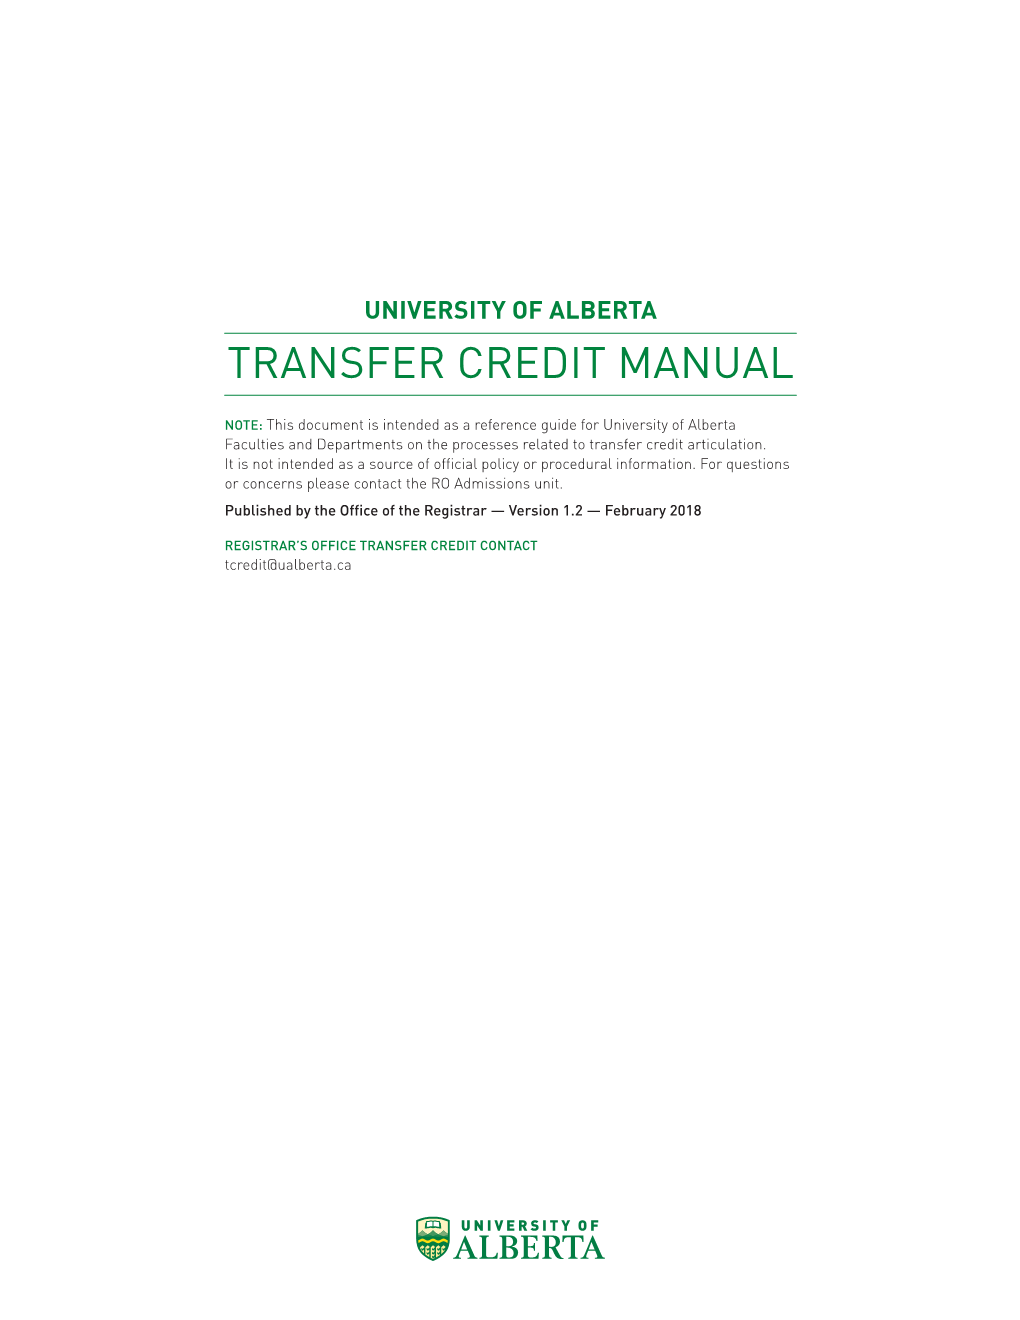 Transfer Credit Manual